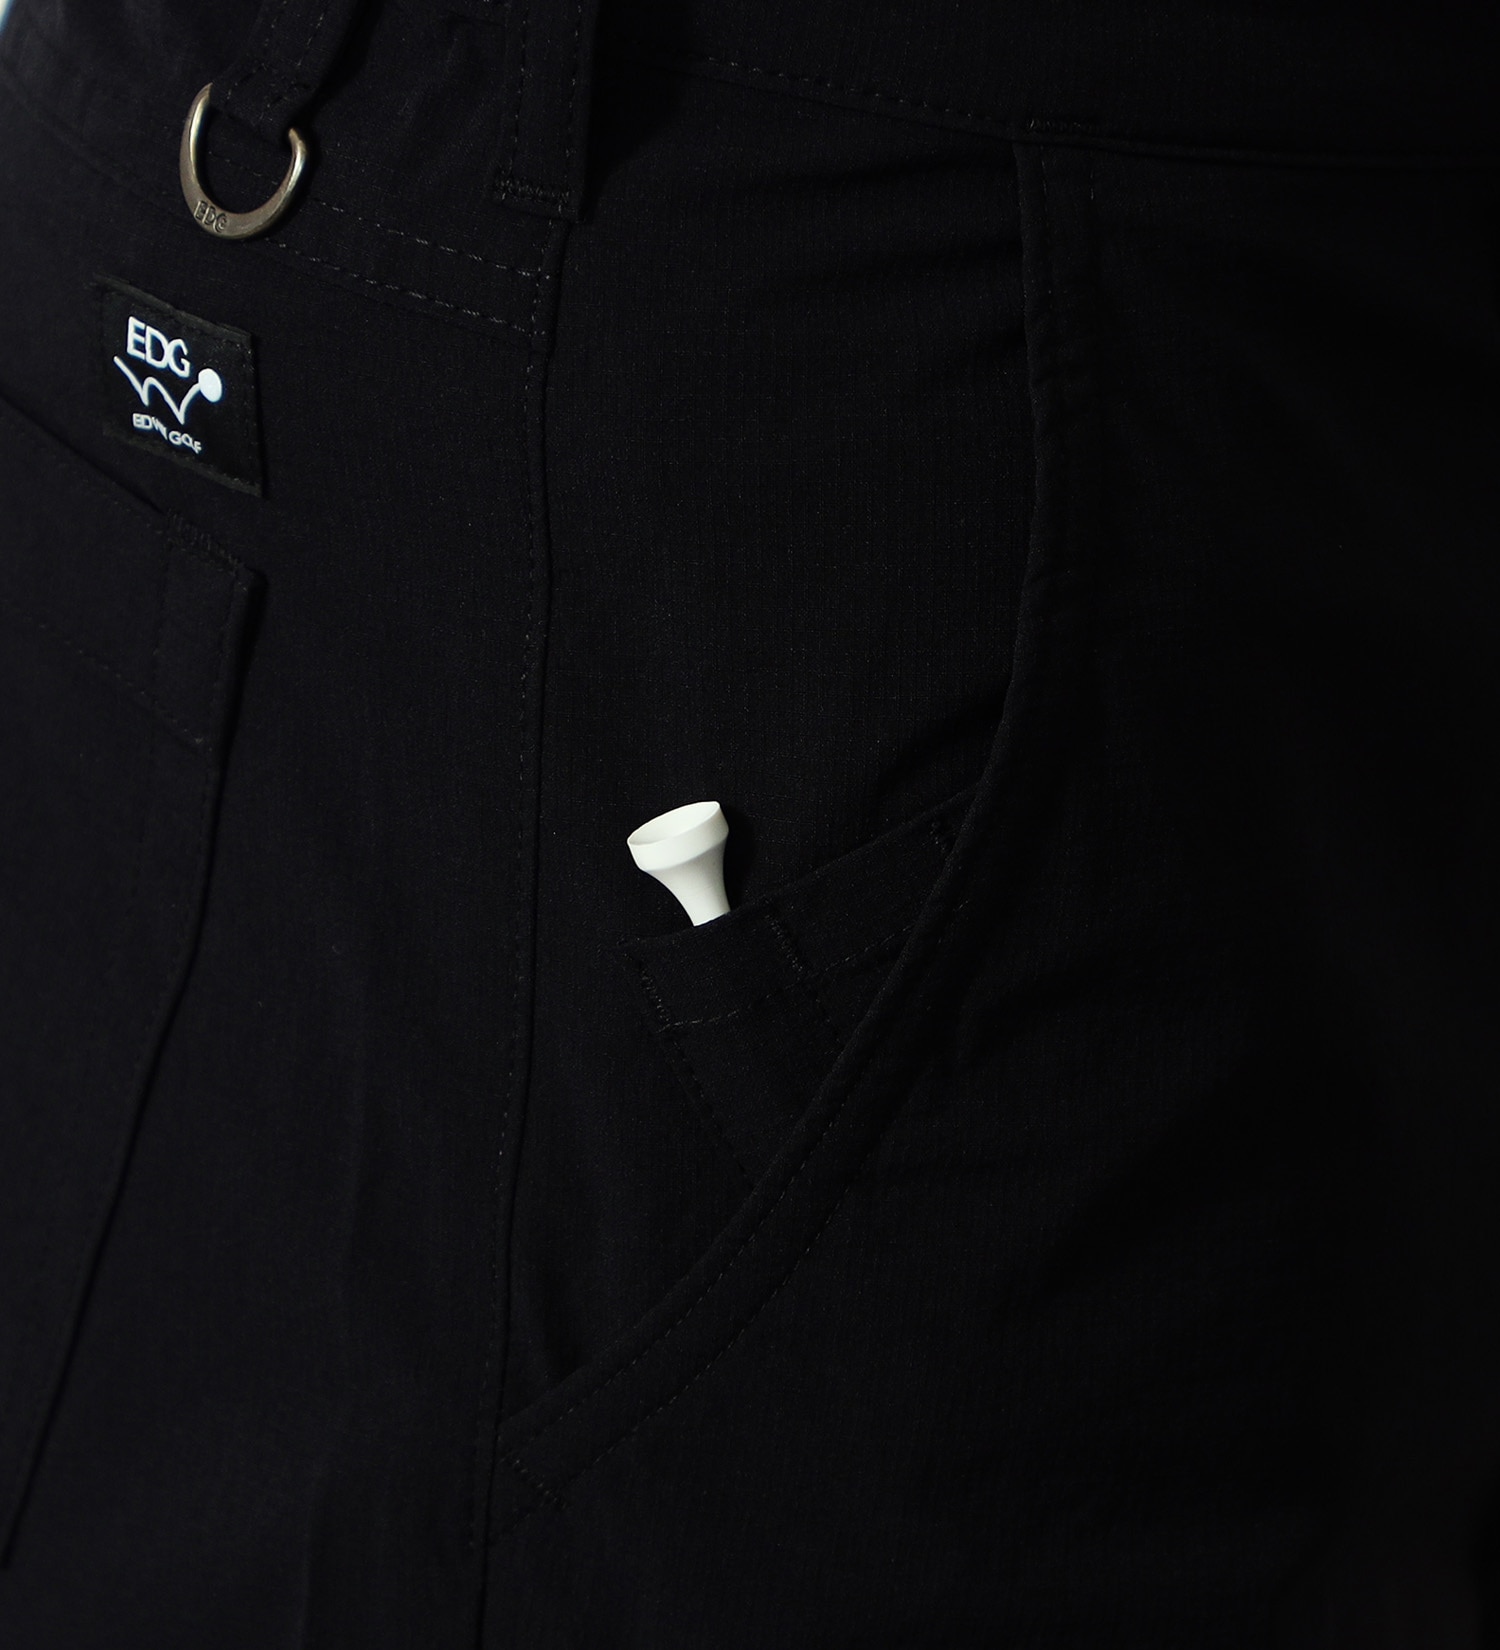 EDWIN(エドウイン)のEDWIN GOLF ショートパンツ 軽量|パンツ/ショート丈/メンズ|ブラック